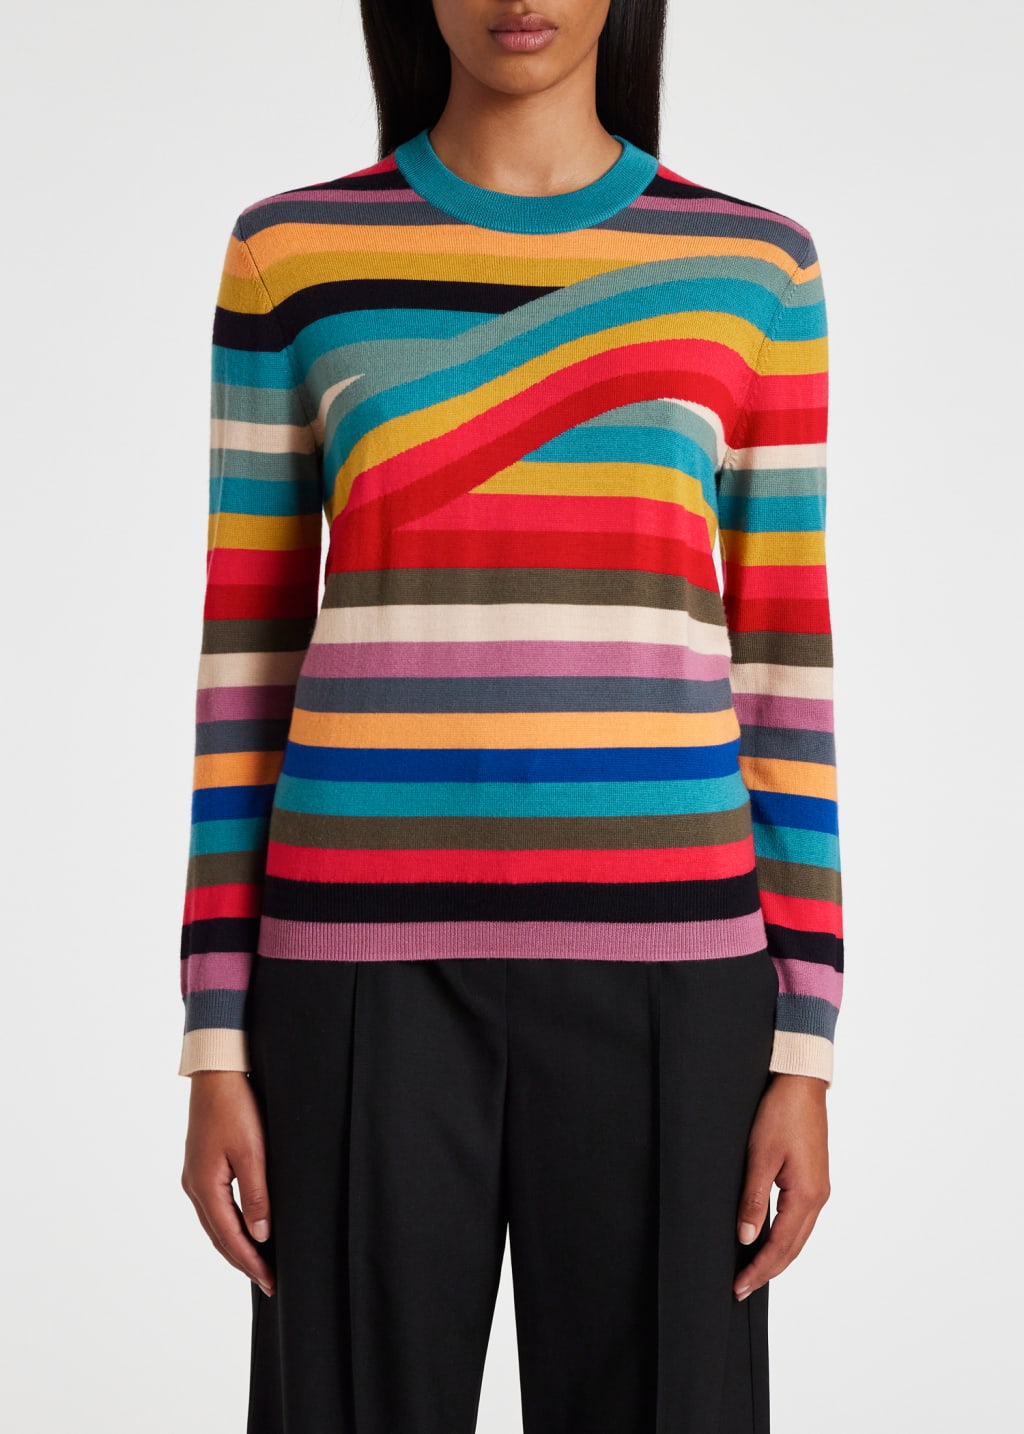 Model View - Women's 'Swirl' Stripe Merino Wool Sweater Paul Smith